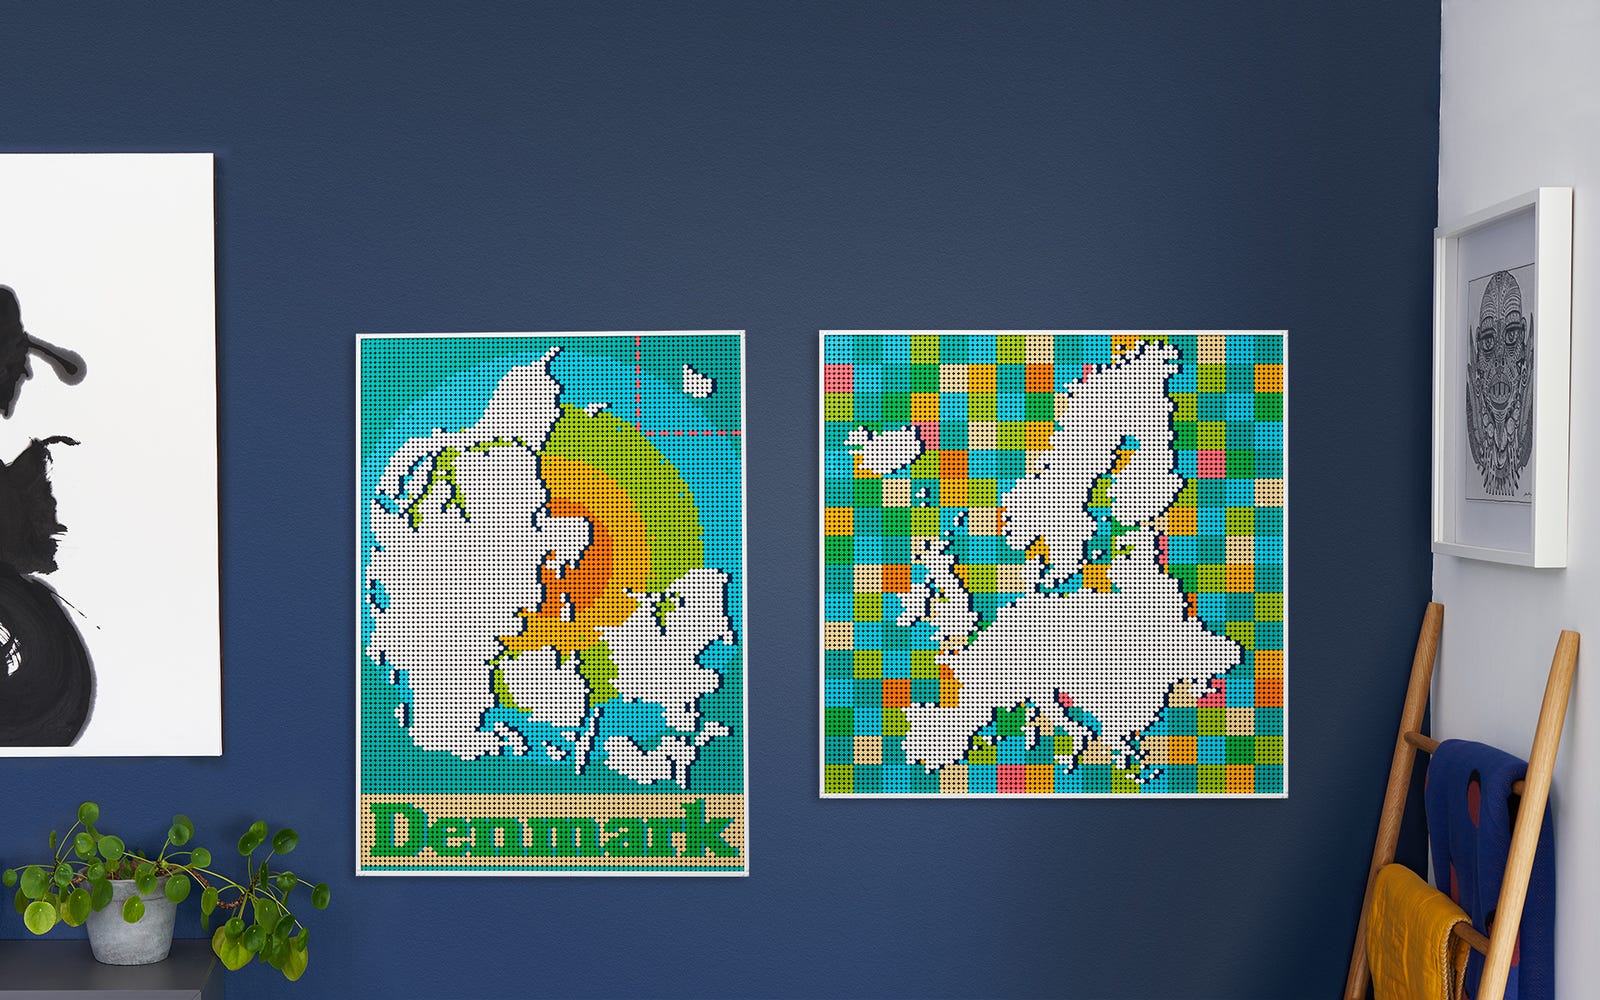 LEGO commercialise une carte du monde à construire pour indiquer vos voyages